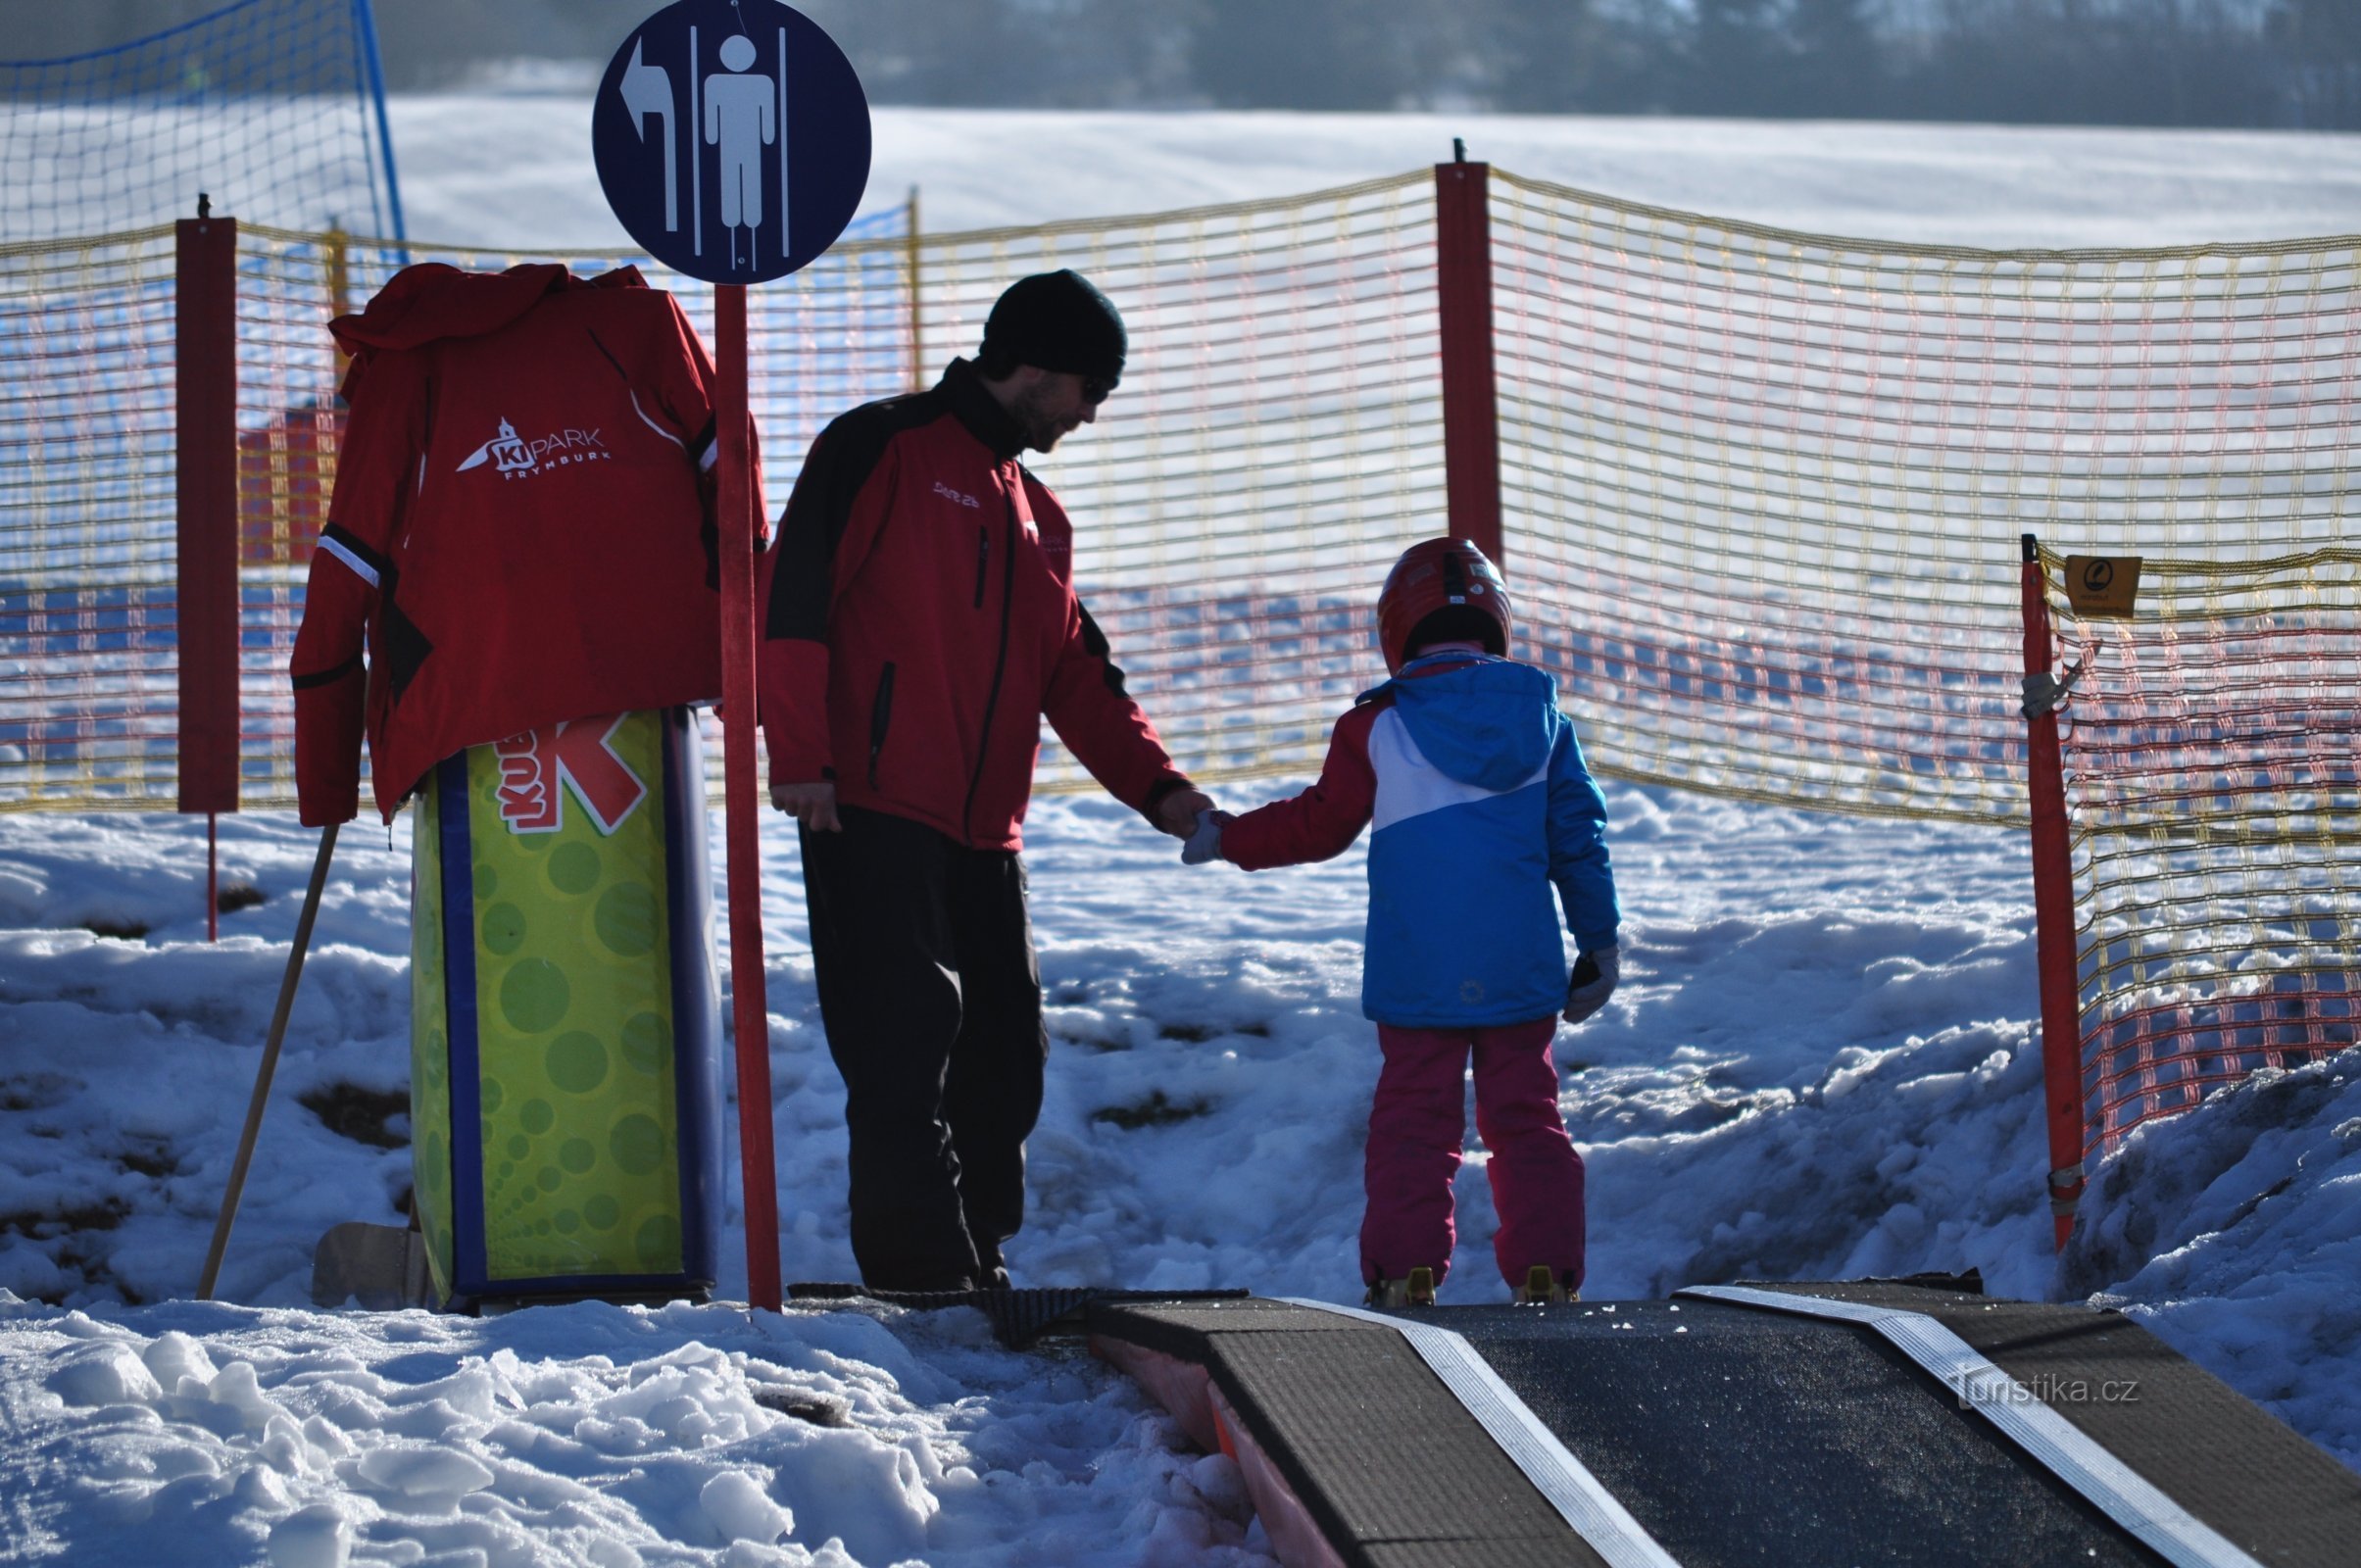 ми завжди раді допомогти з початком катання на лижах